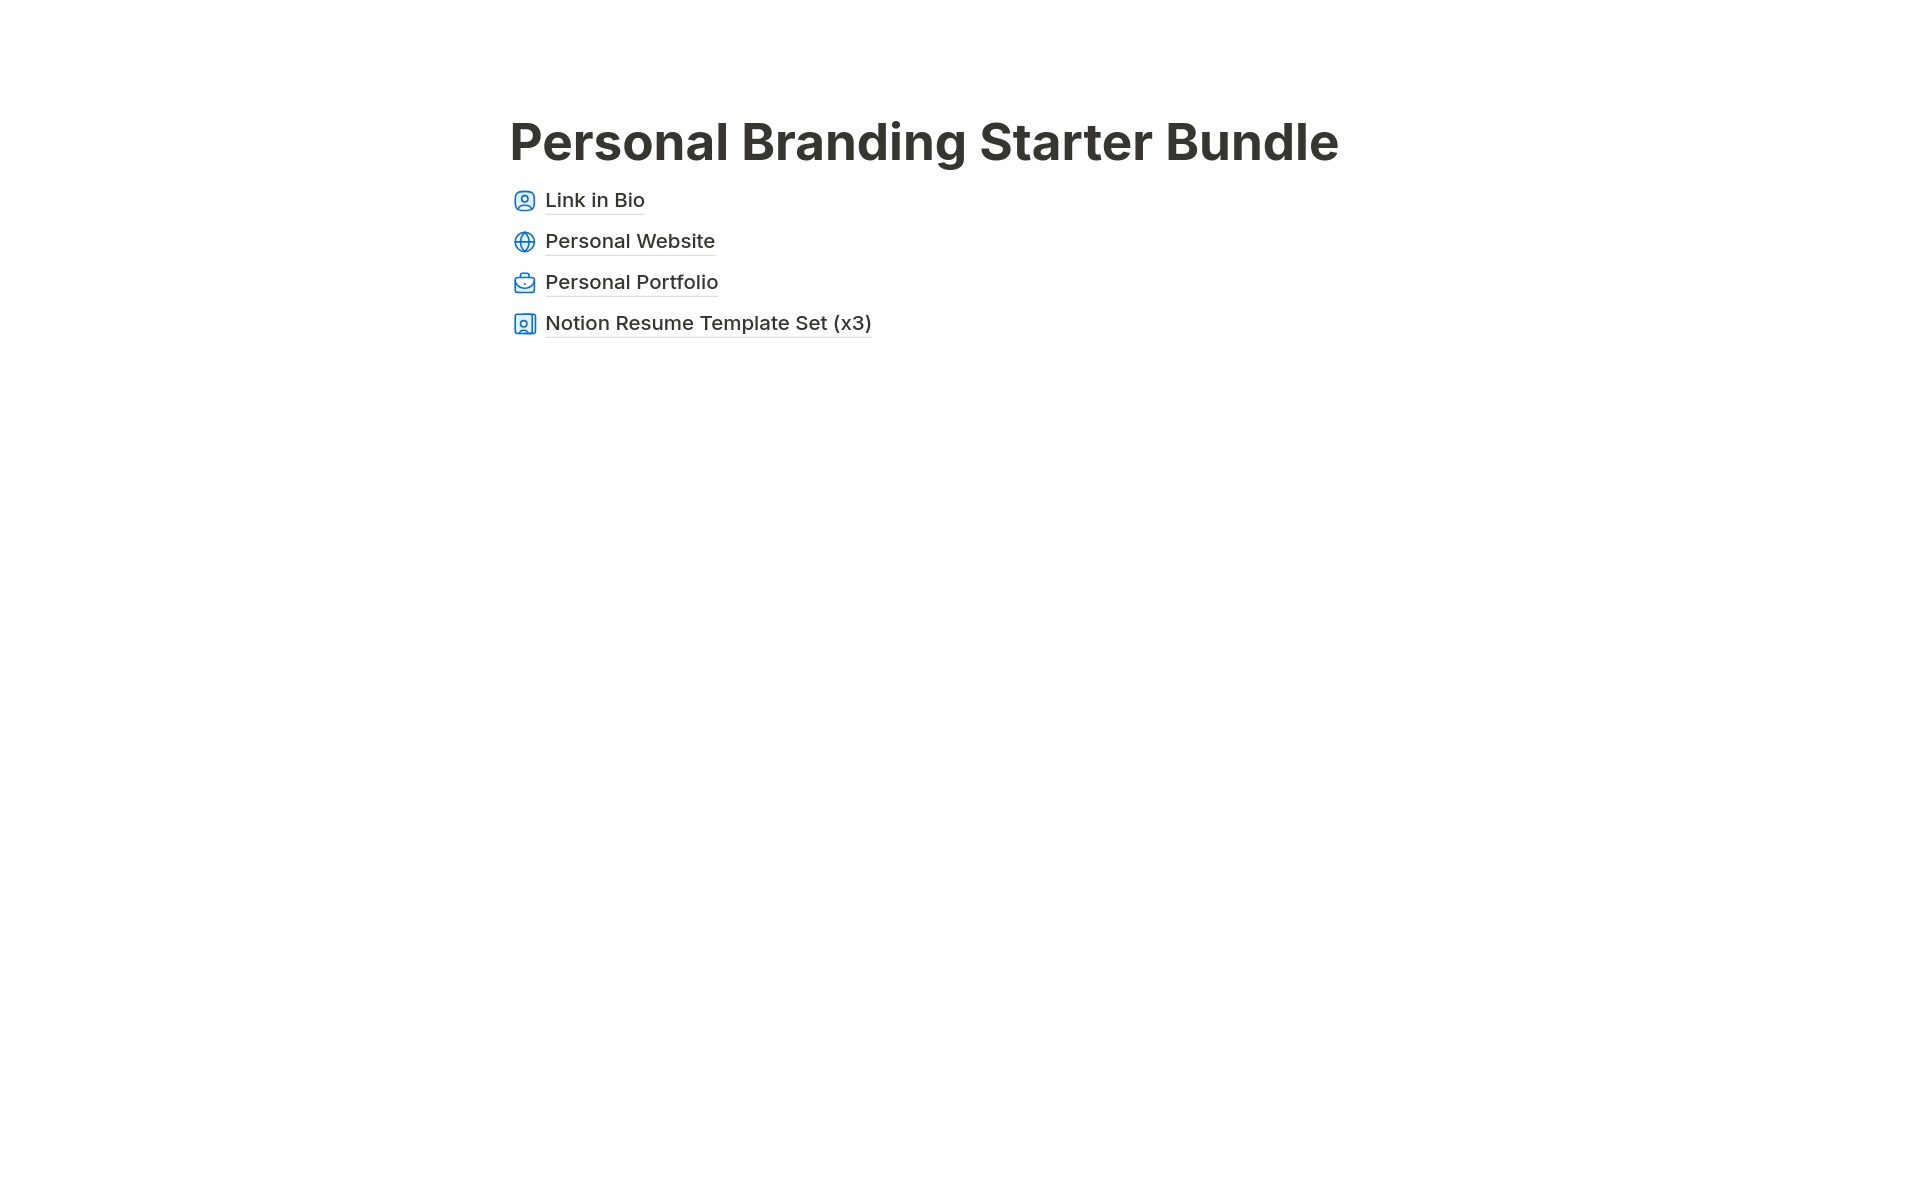 Vista previa de una plantilla para Personal Branding Starter Bundle